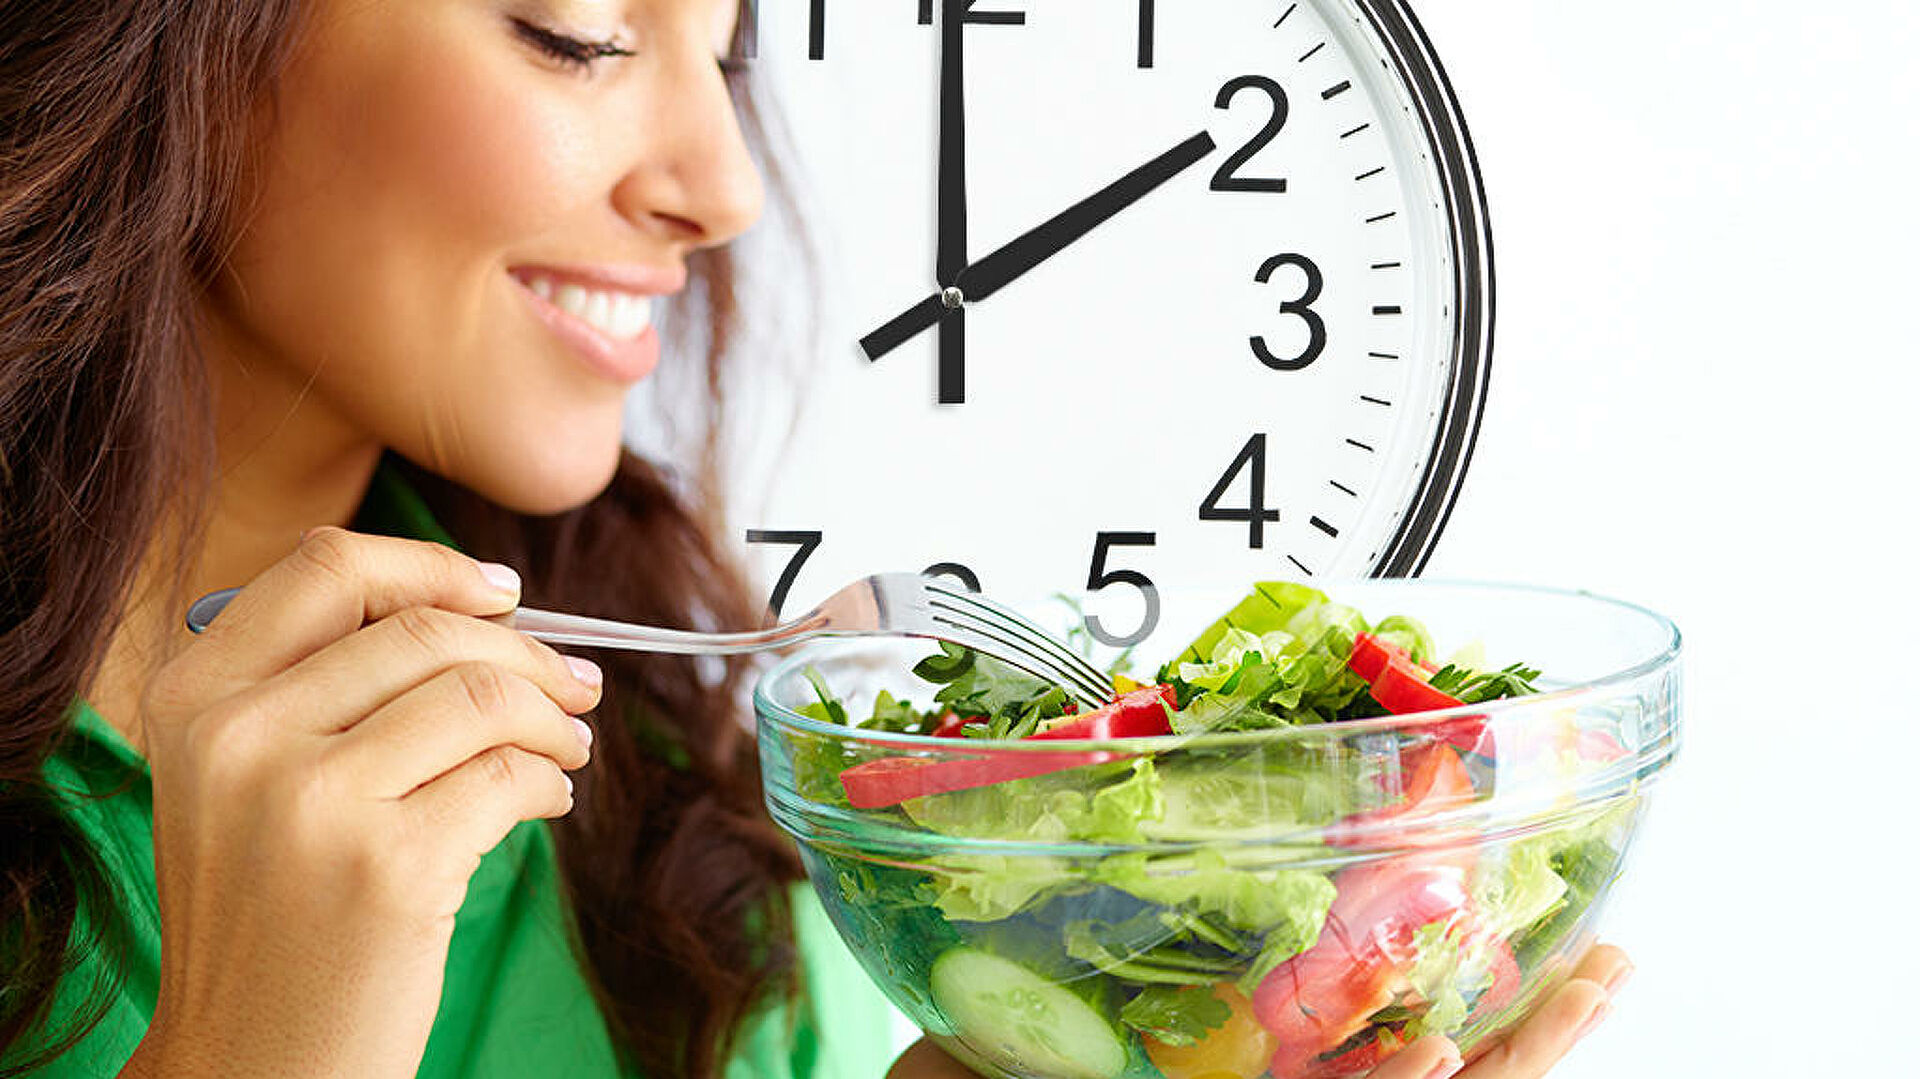 femeie care manca salata si pe fon are un ceas